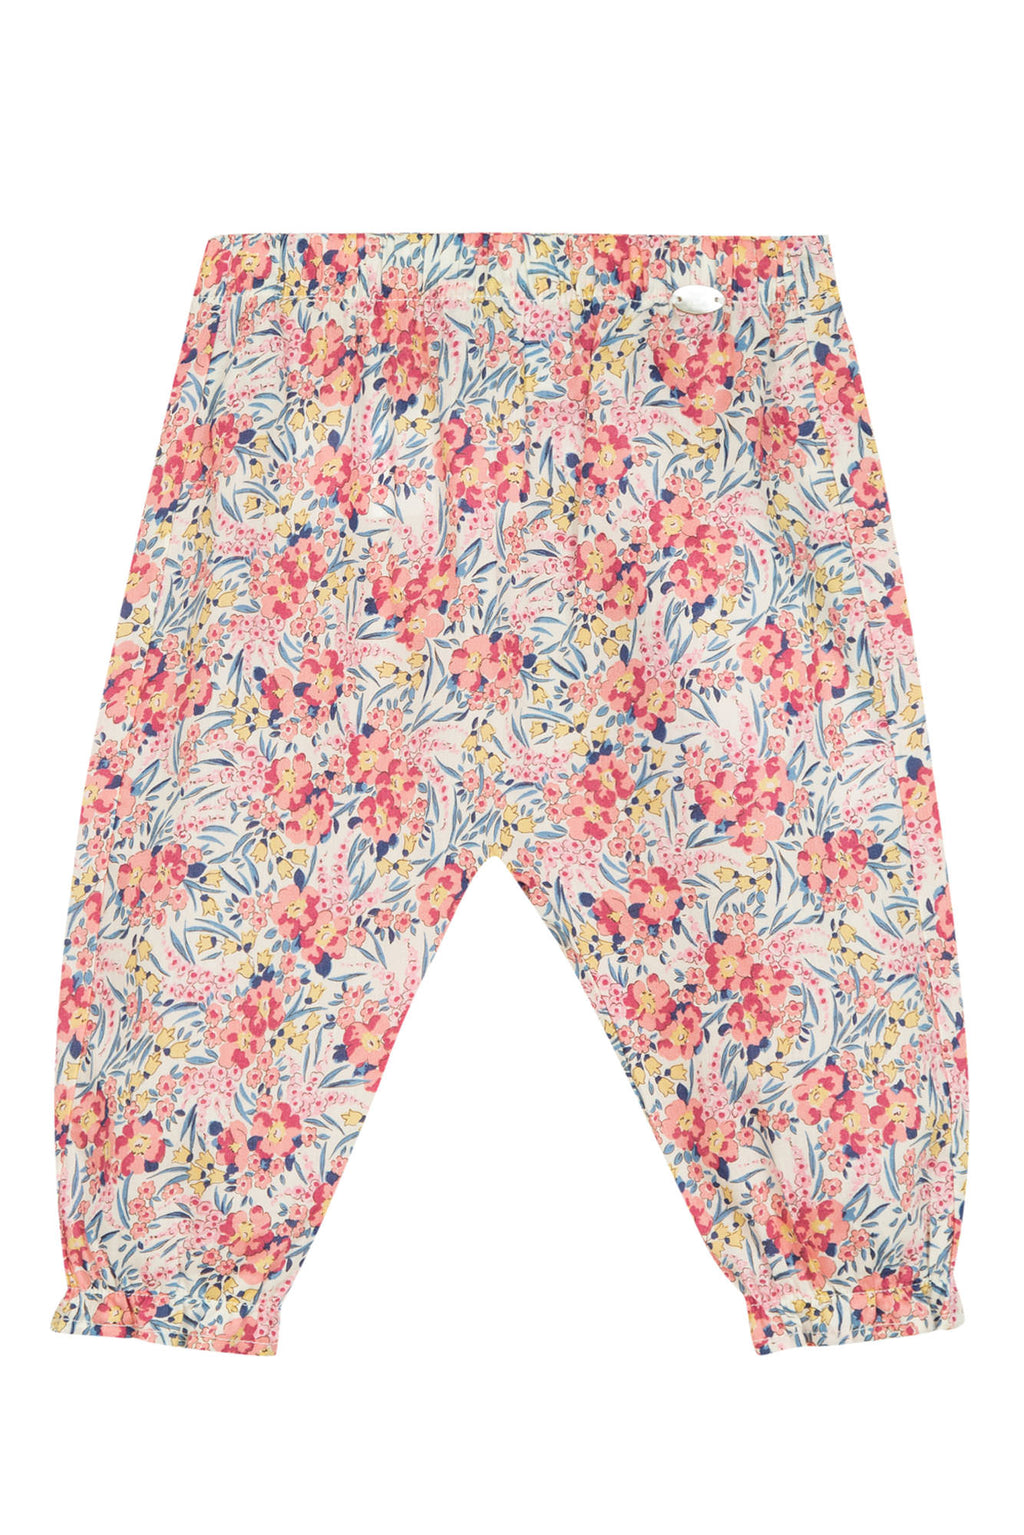 Pantalon - Tela de algodón Liberty amapola